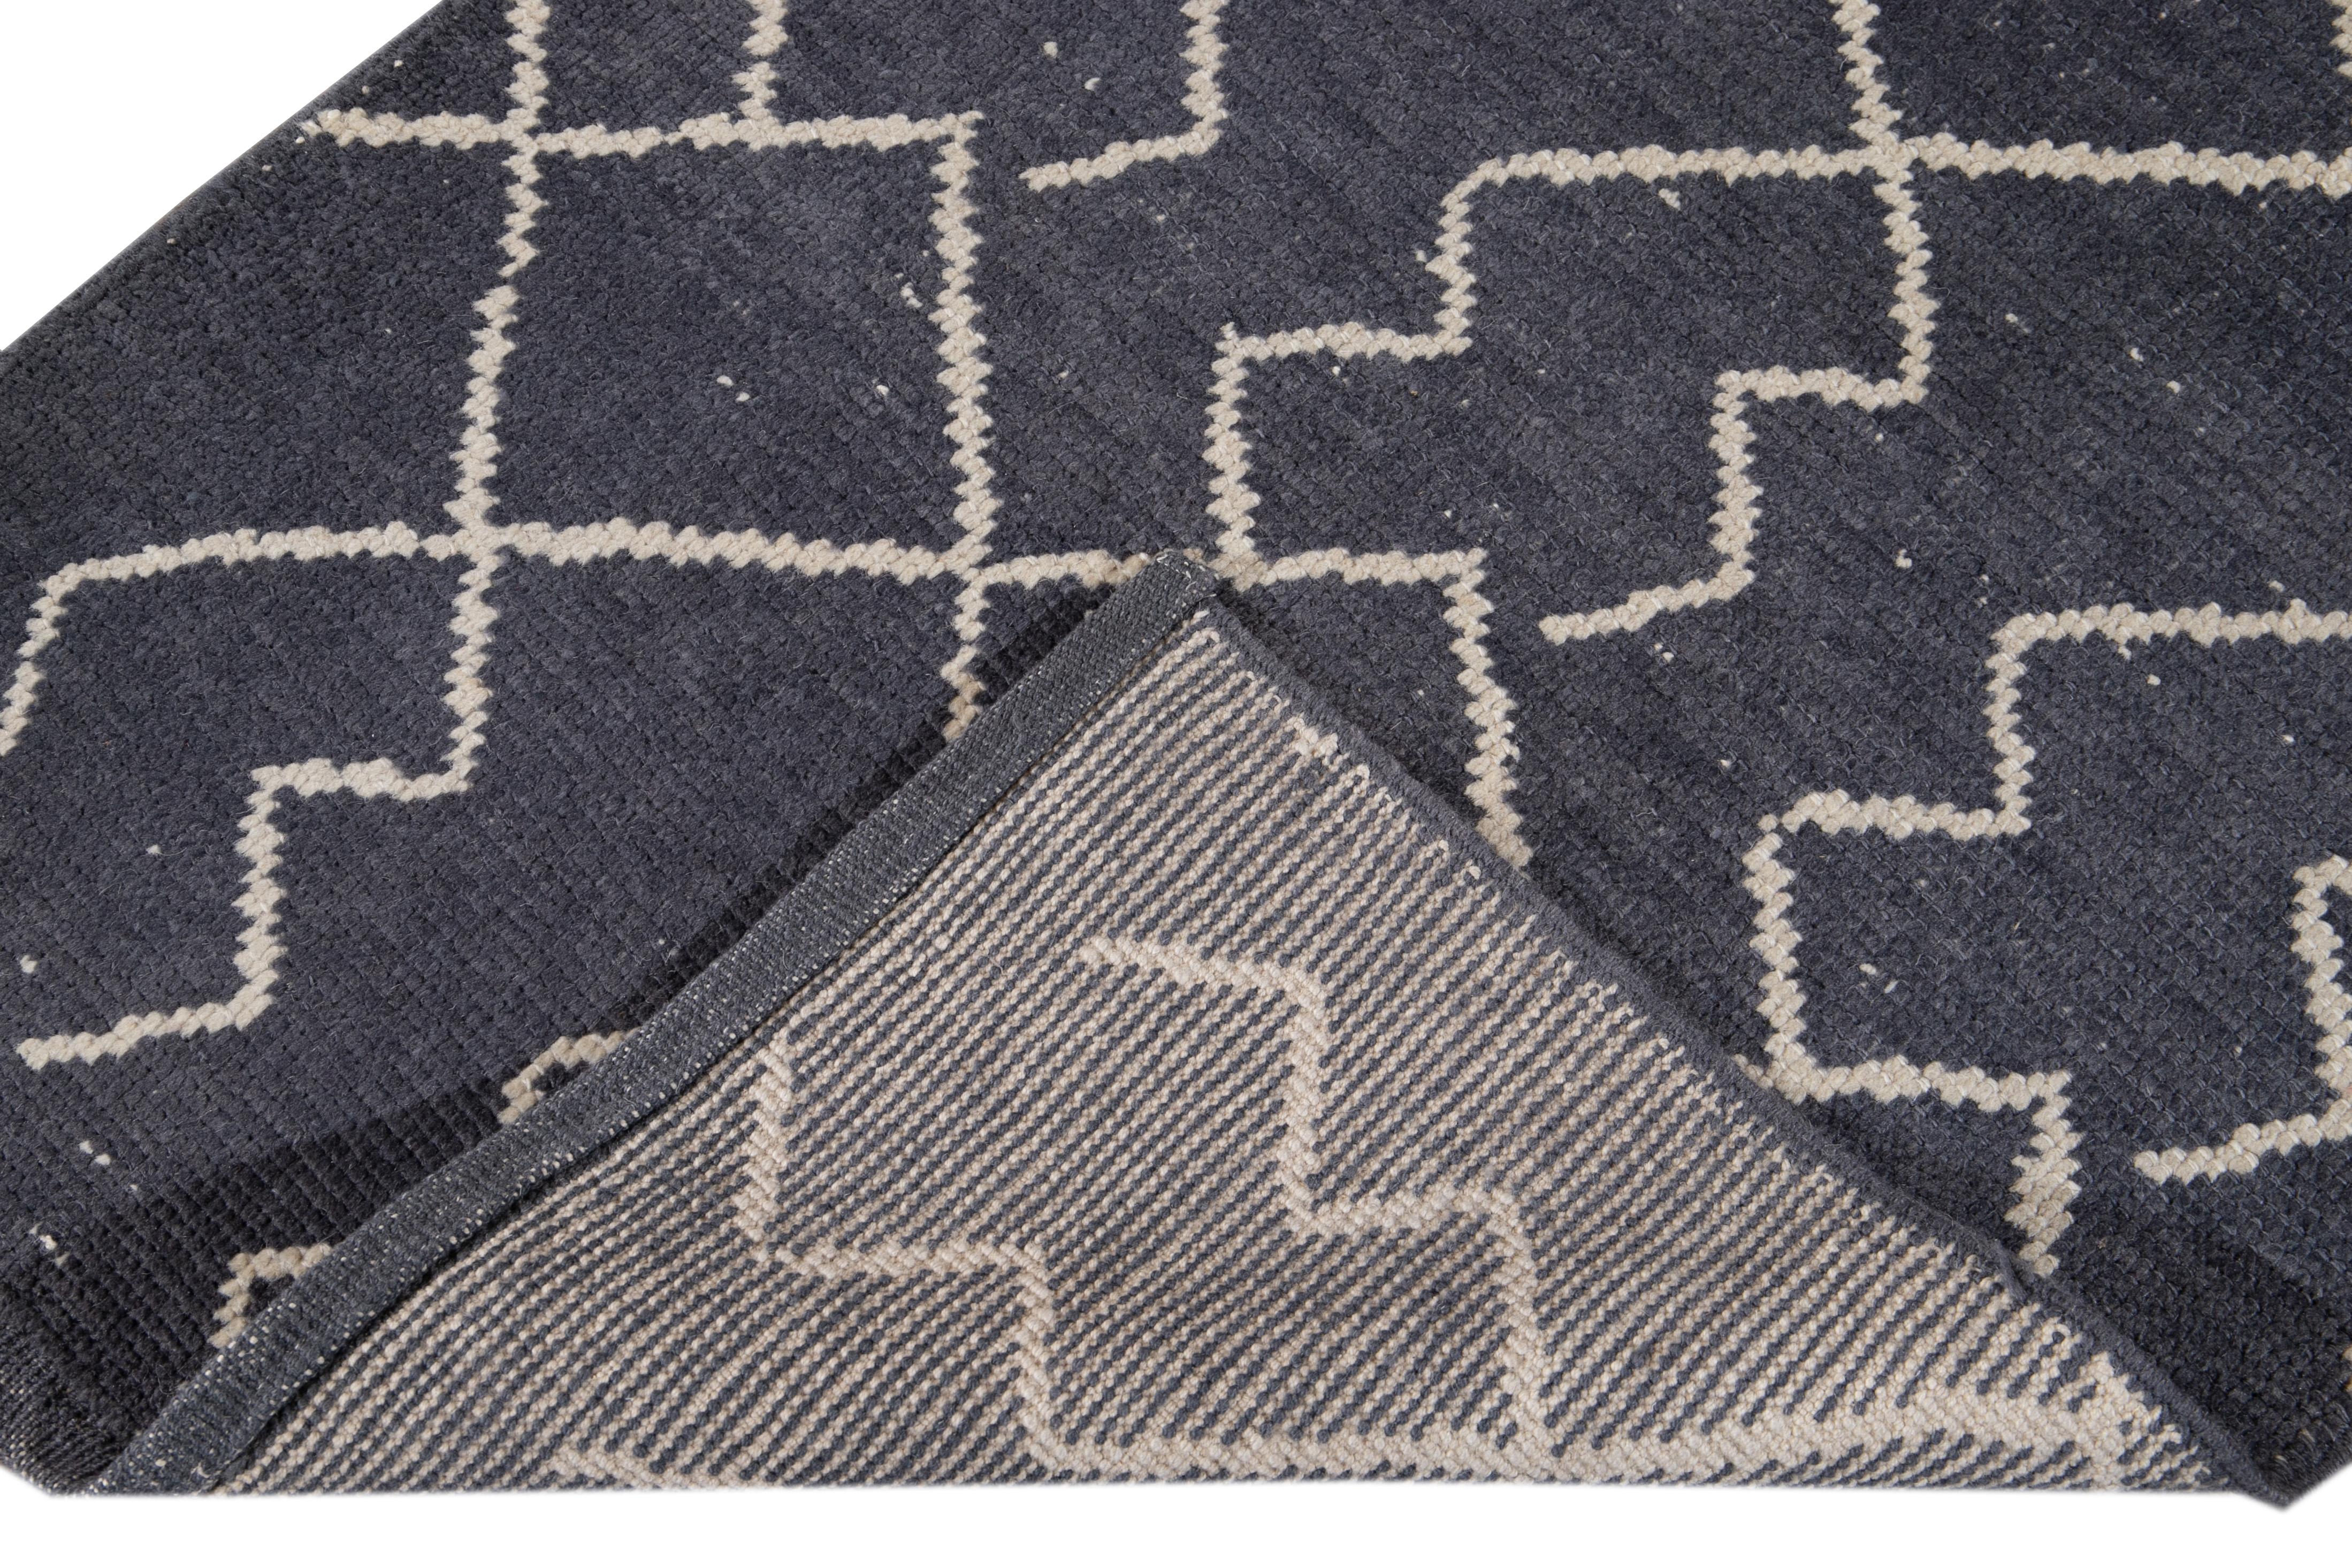 Schöner zeitgenössischer Läufer im marokkanischen Stil aus handgeknüpfter Wolle mit einem marineblauen Feld. Dieser moderne Teppich hat einen elfenbeinfarbenen Akzent in einem prächtigen geometrischen Stammesmuster.

Dieser Teppich misst: 3' x